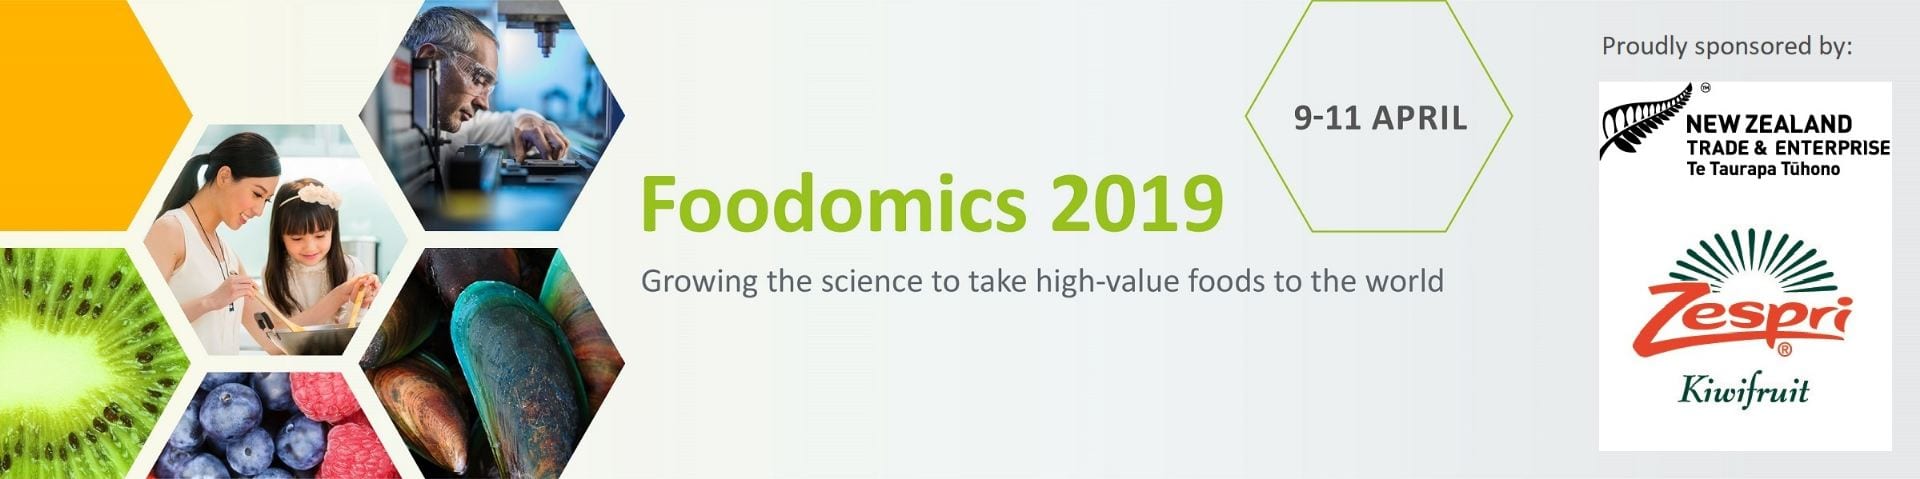 Foodomics 2019 banner